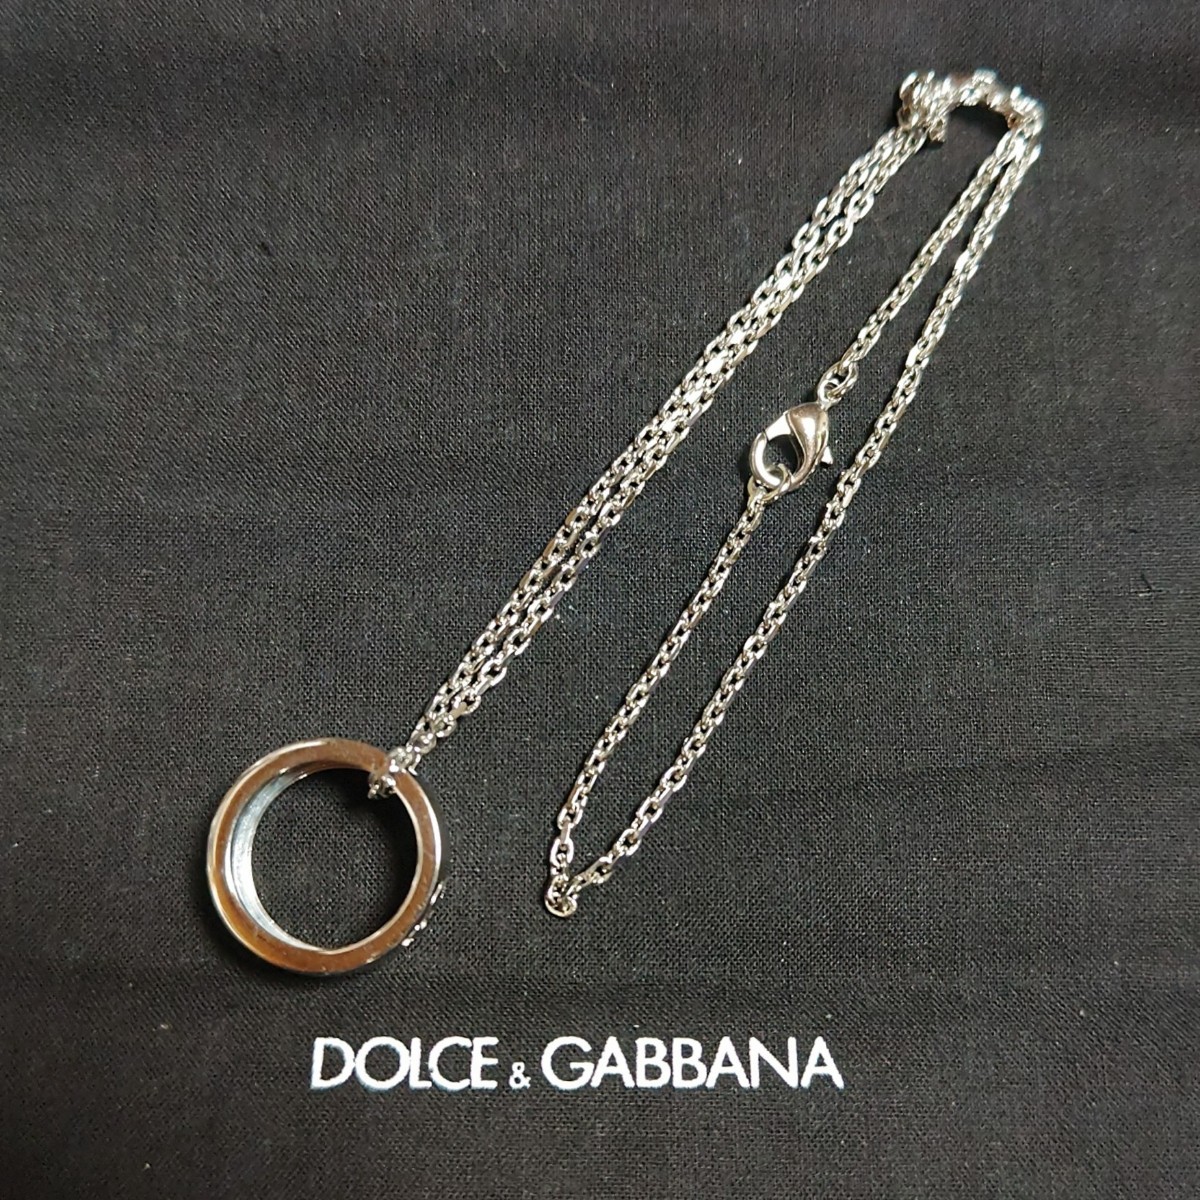 証明書付き 美品 イタリア製 DOLCE&GABBANA 2way ネックレス リング D&G 本物 正規品の画像1